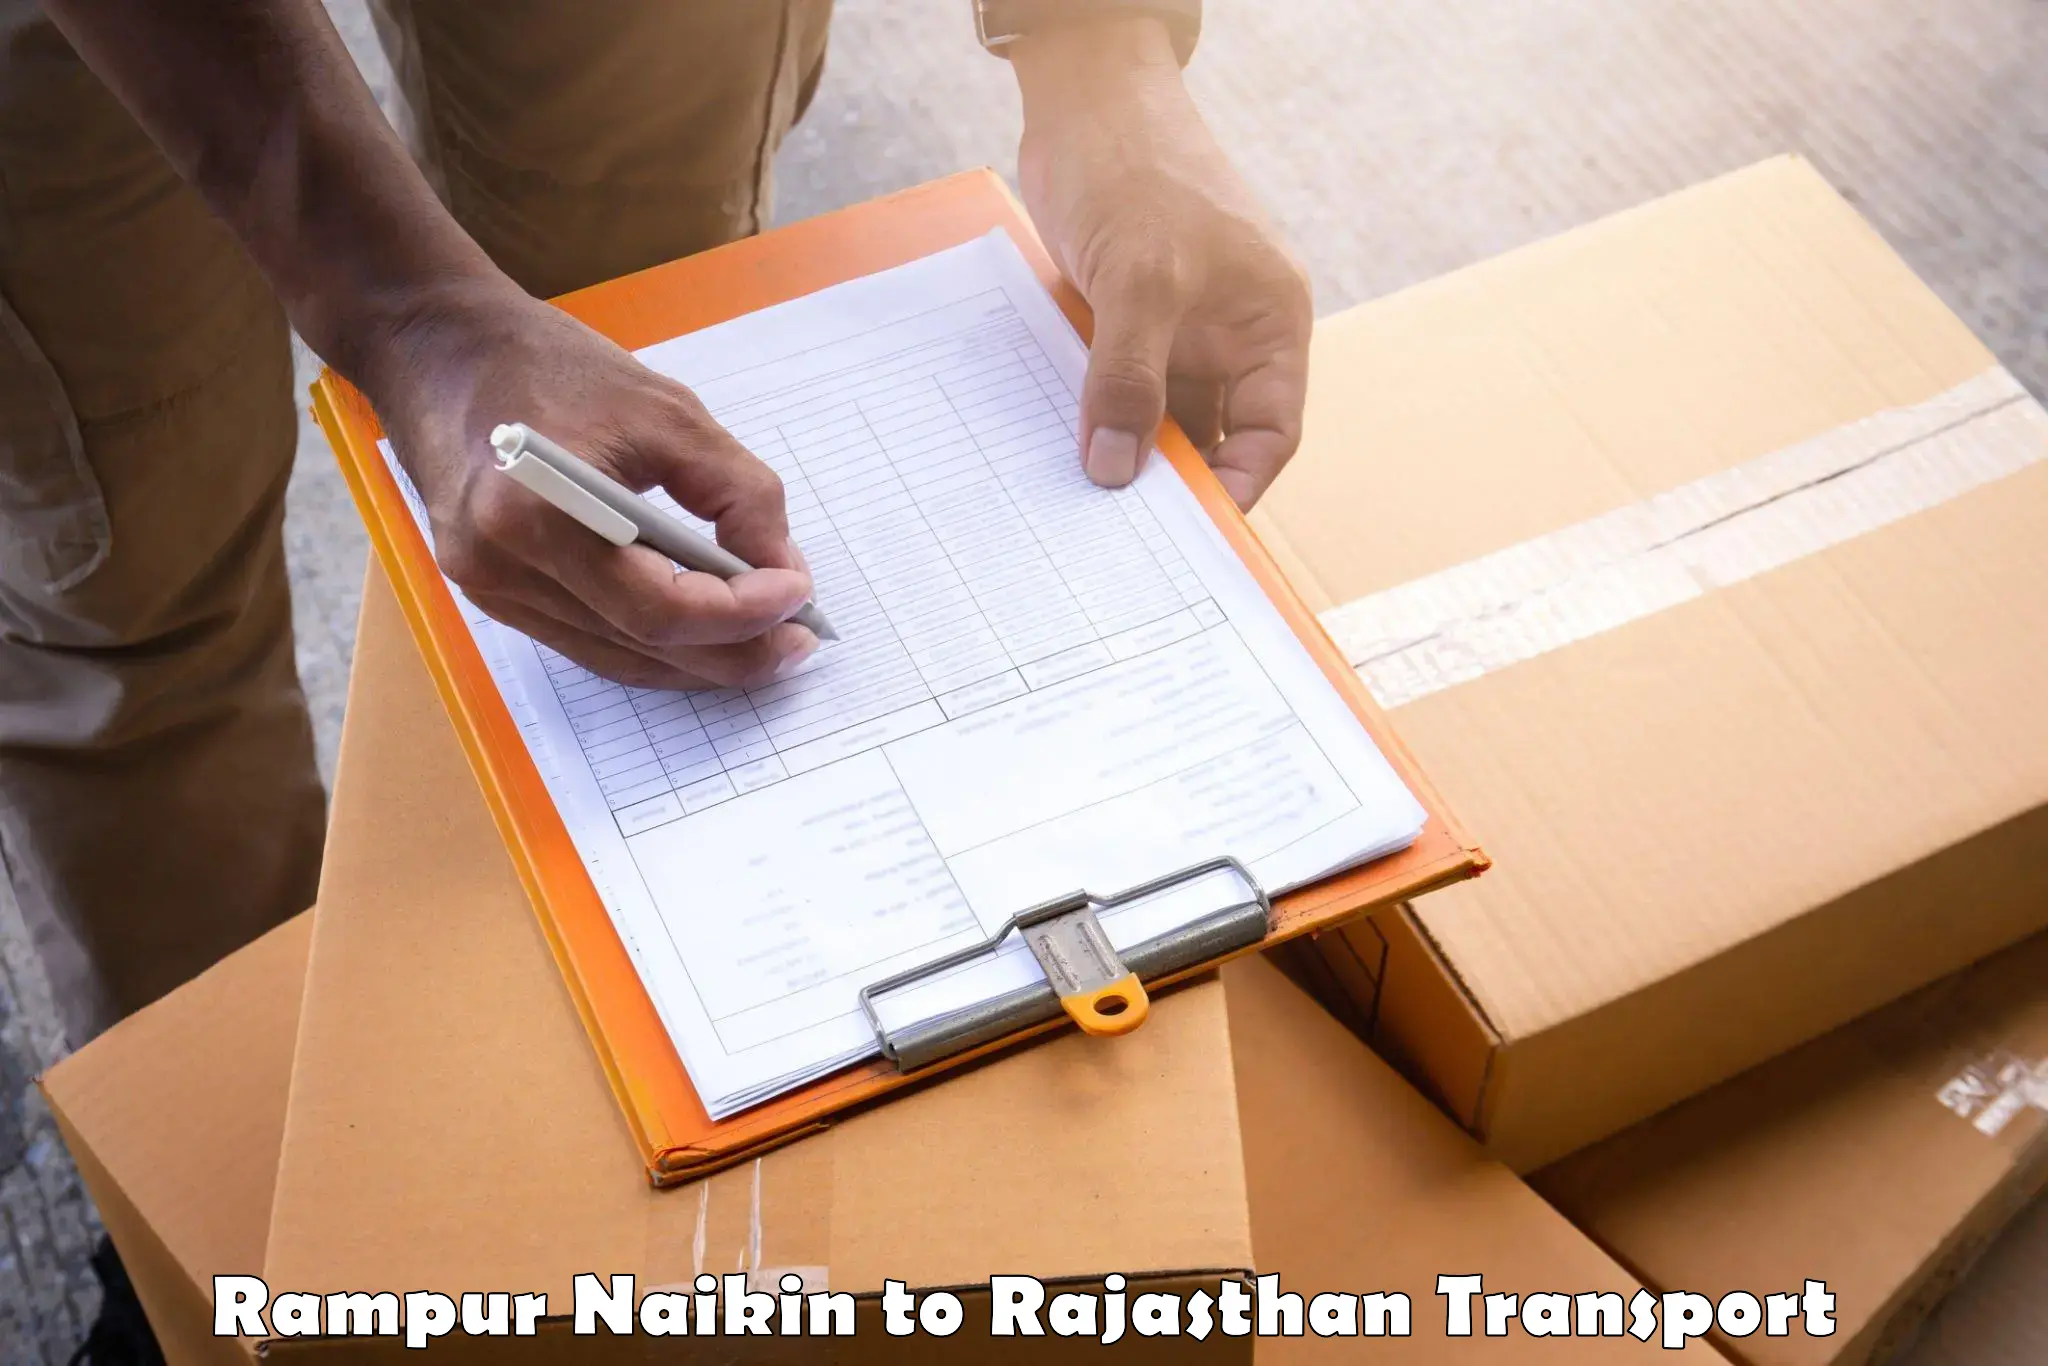 Vehicle transport services Rampur Naikin to Sirohi